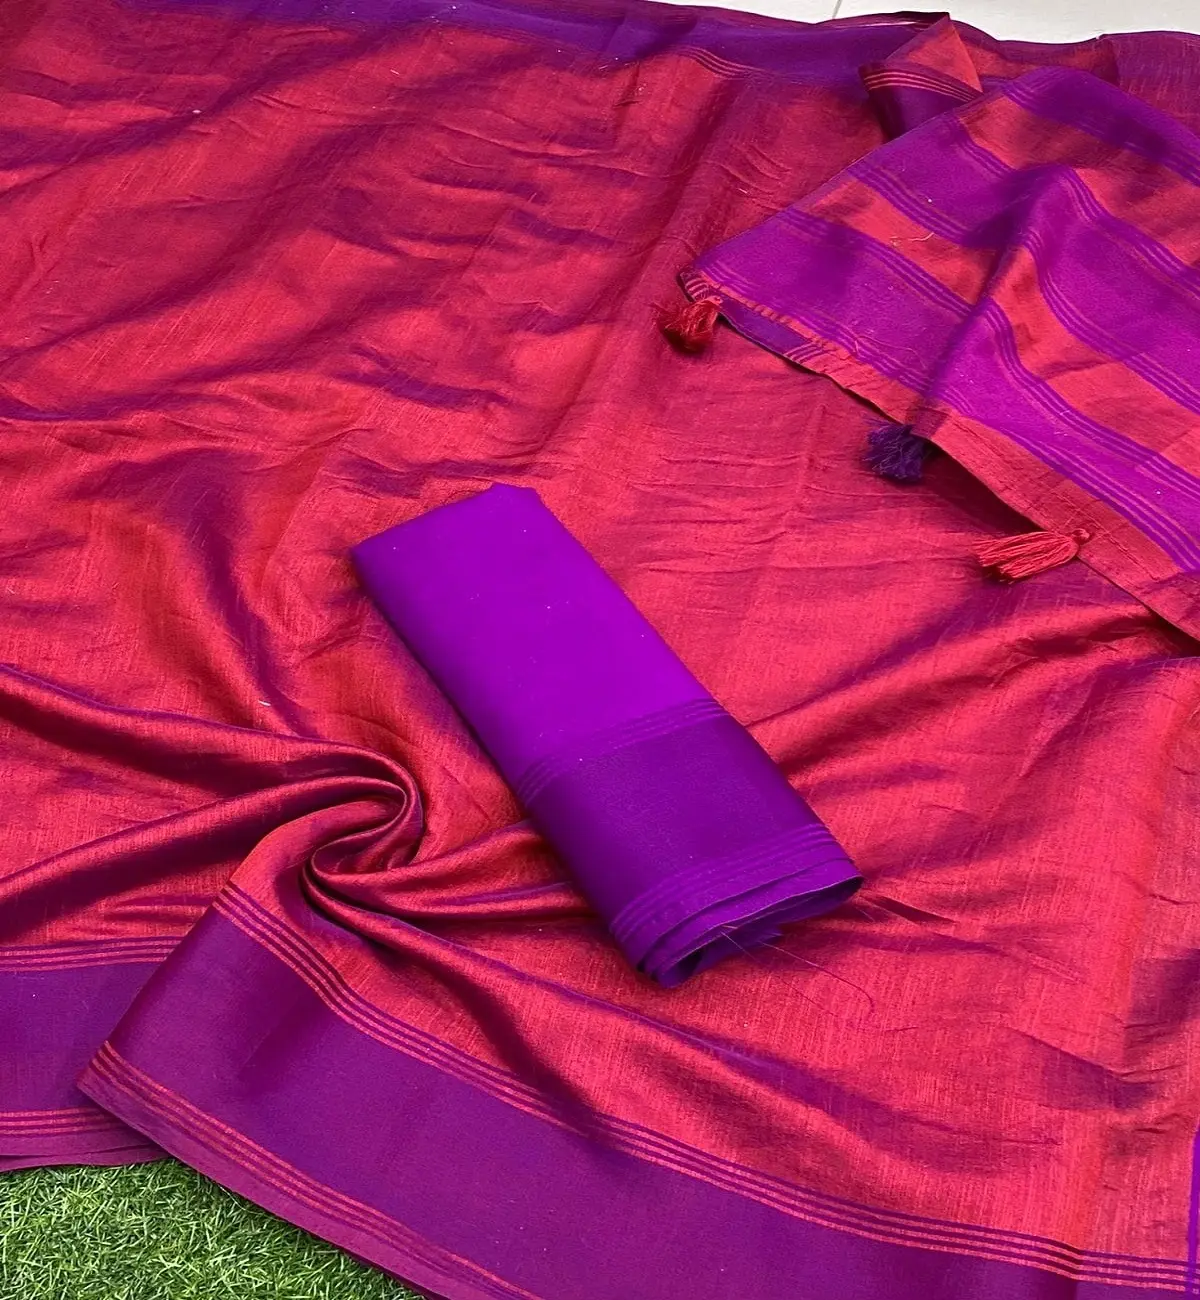 Apresentando aqui, perfeito simples e sóbrio Silk olhar saree para esta temporada de verão